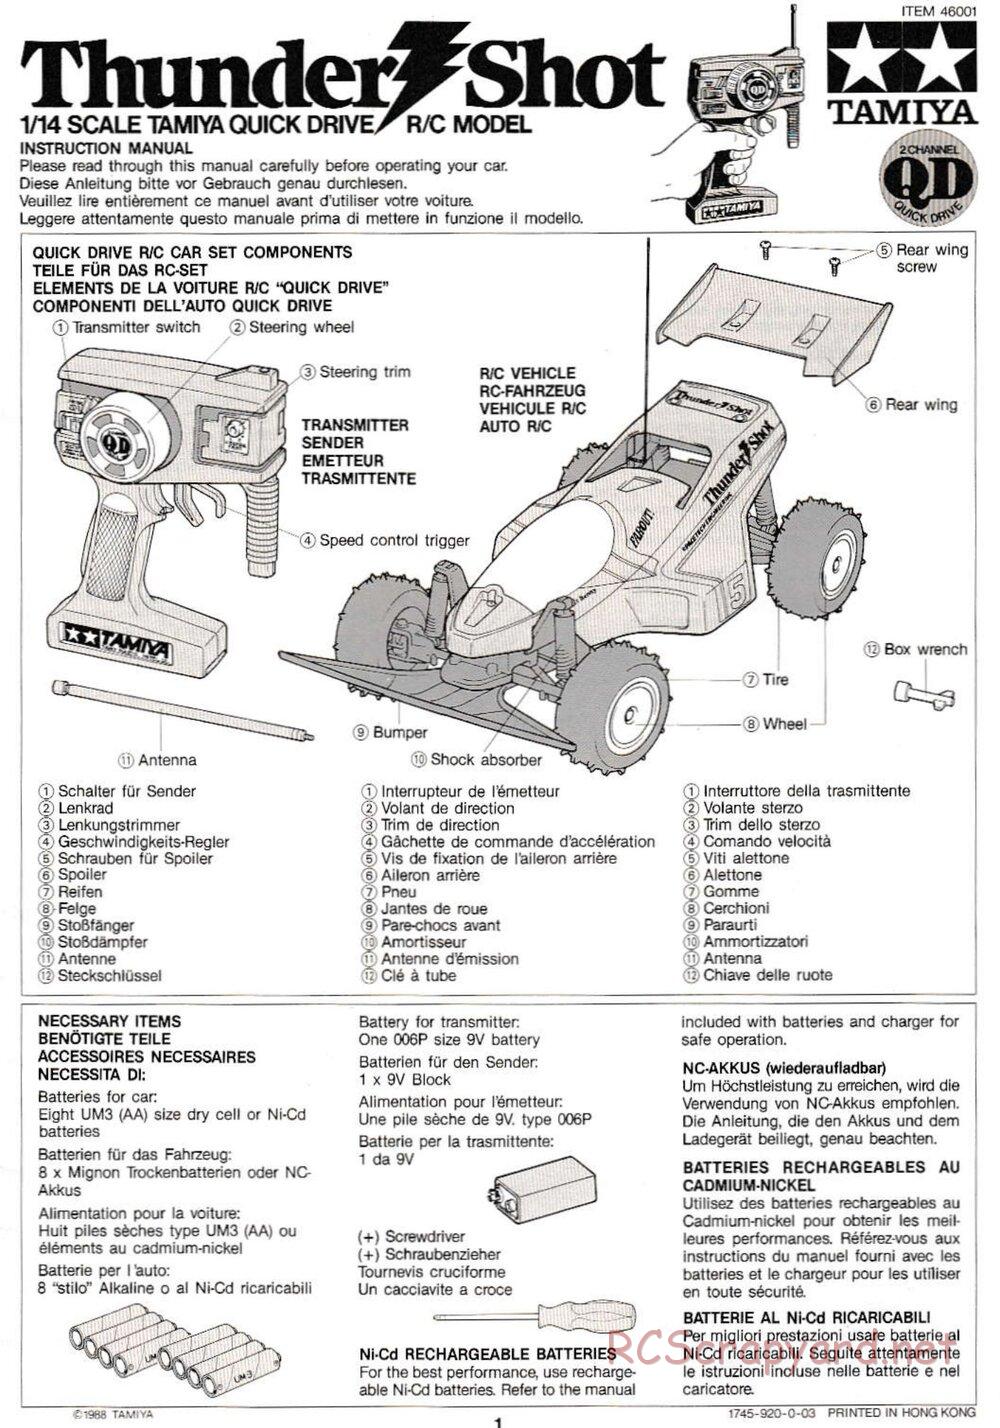 Tamiya - Thunder Shot QD Chassis - Manual - Page 1